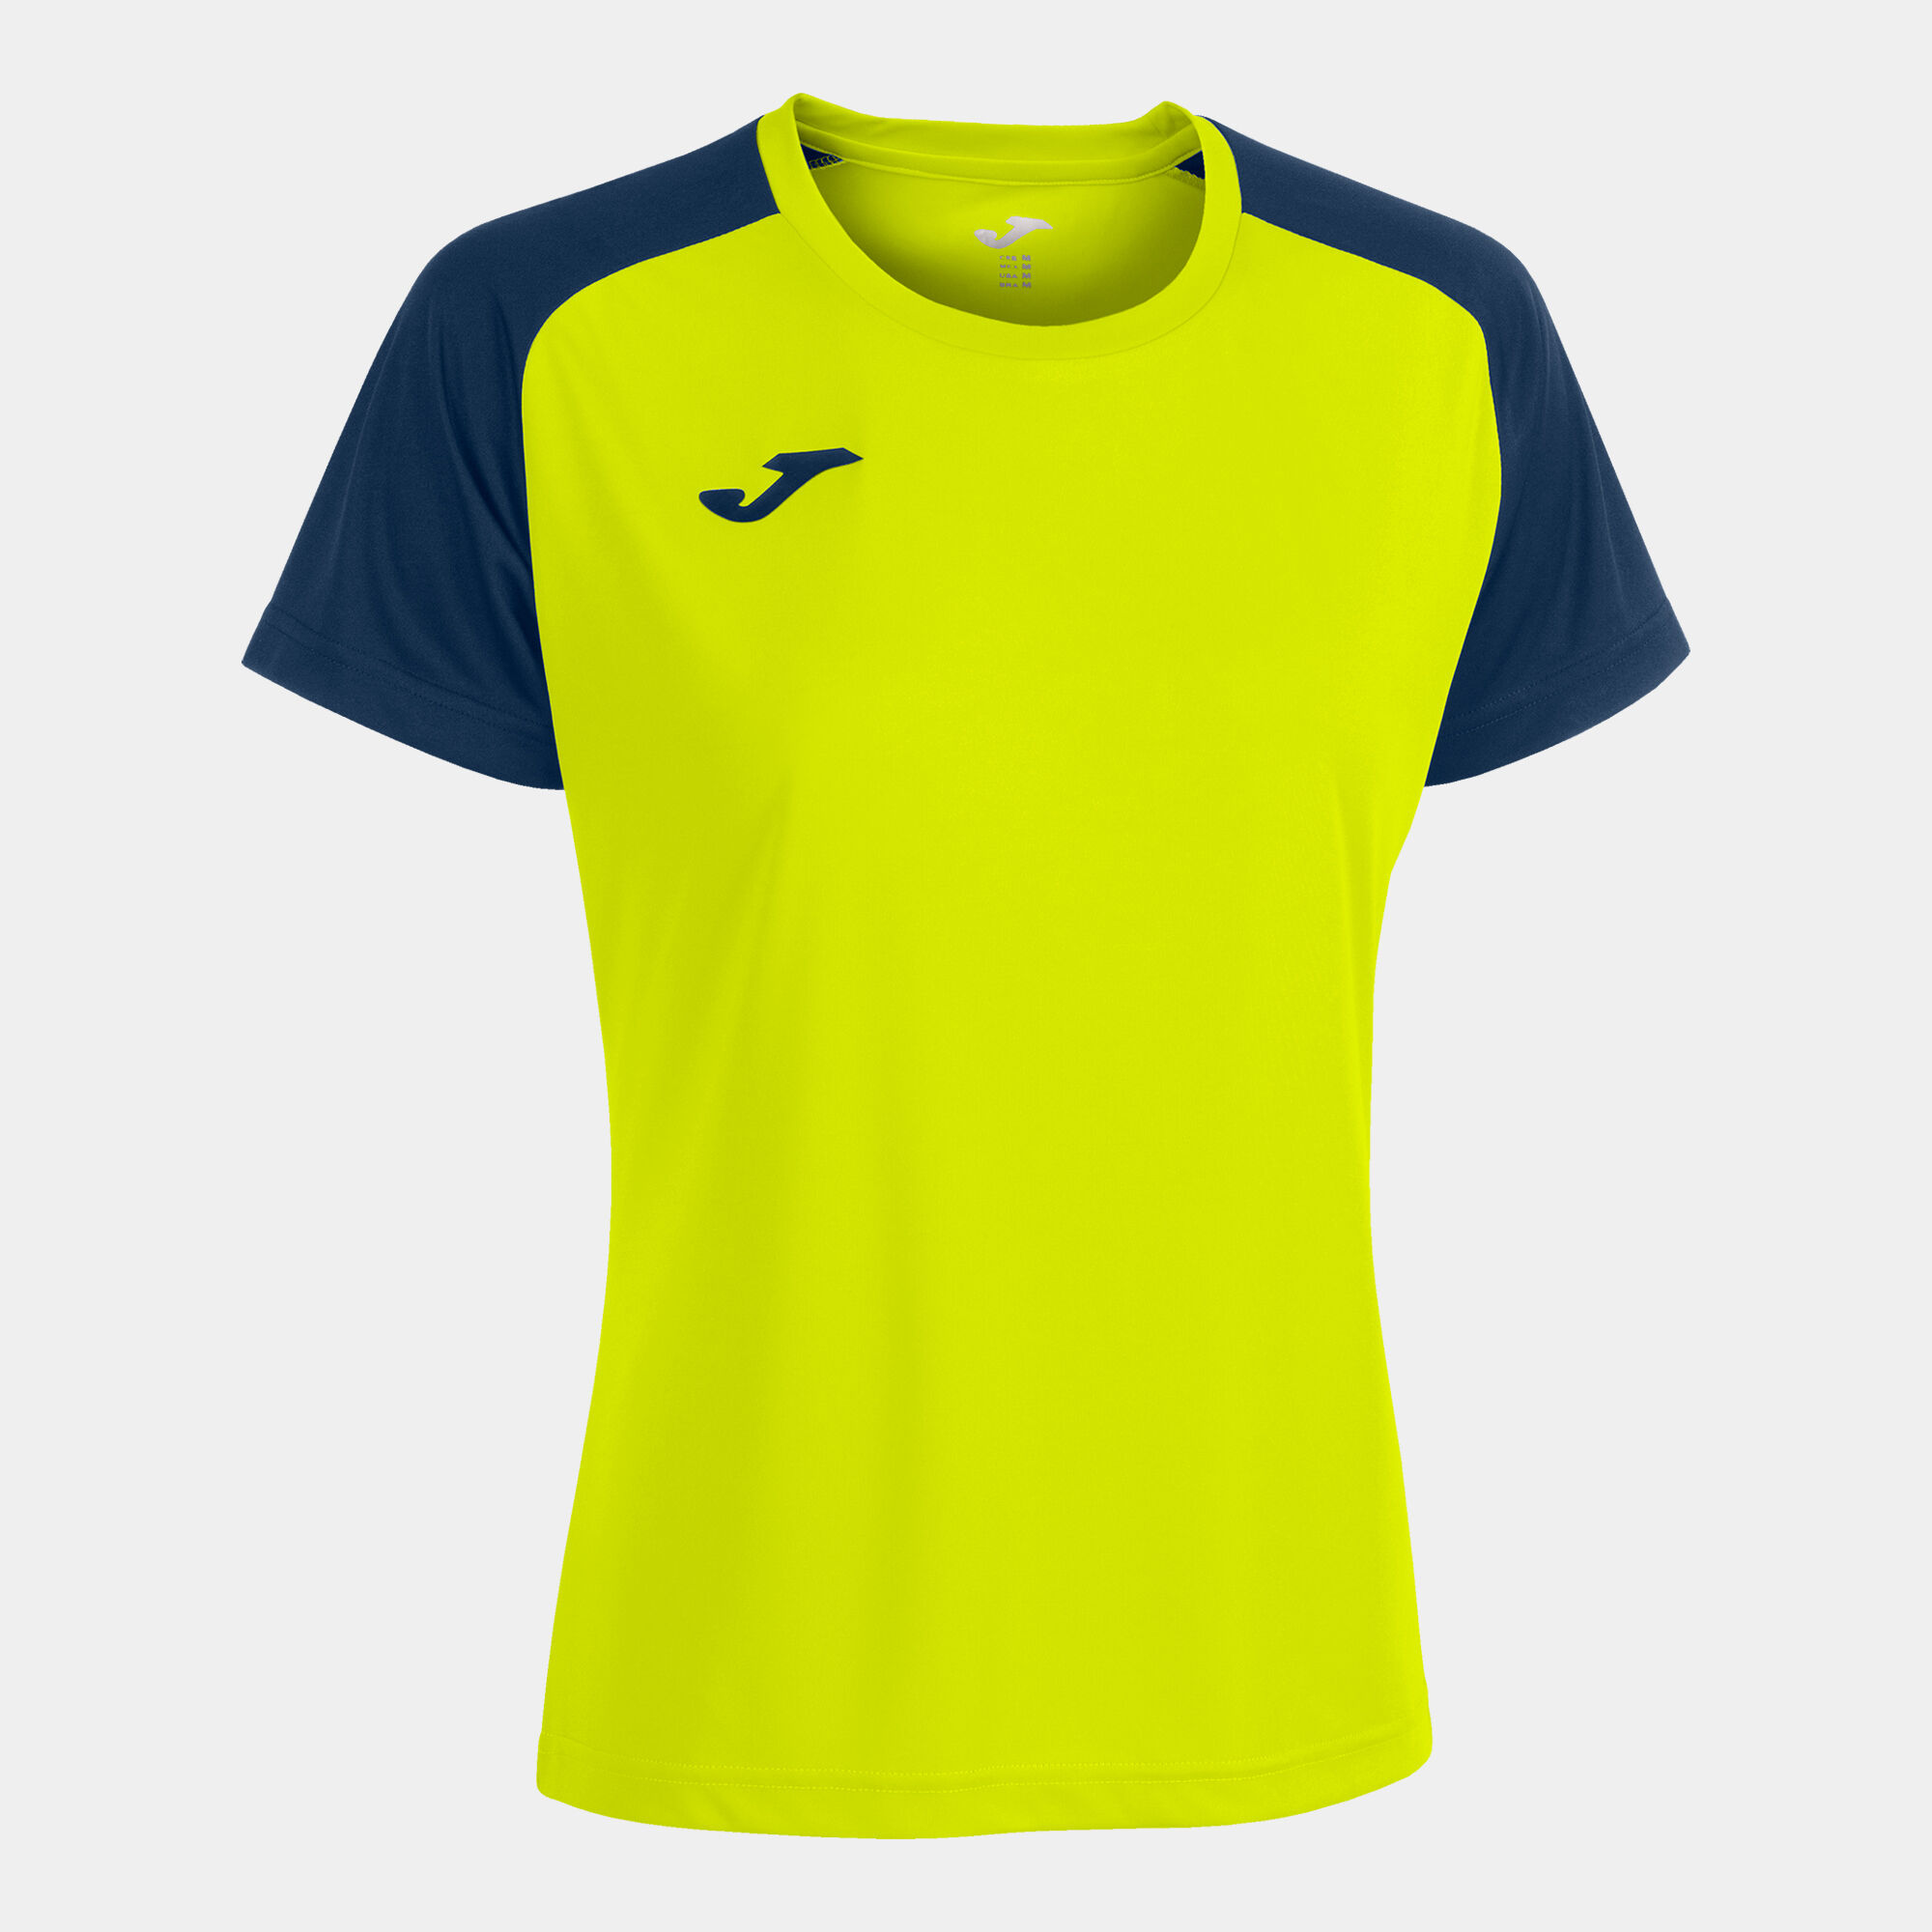 Shirt short sleeve woman Academy IV fluorescent yellow navy blue